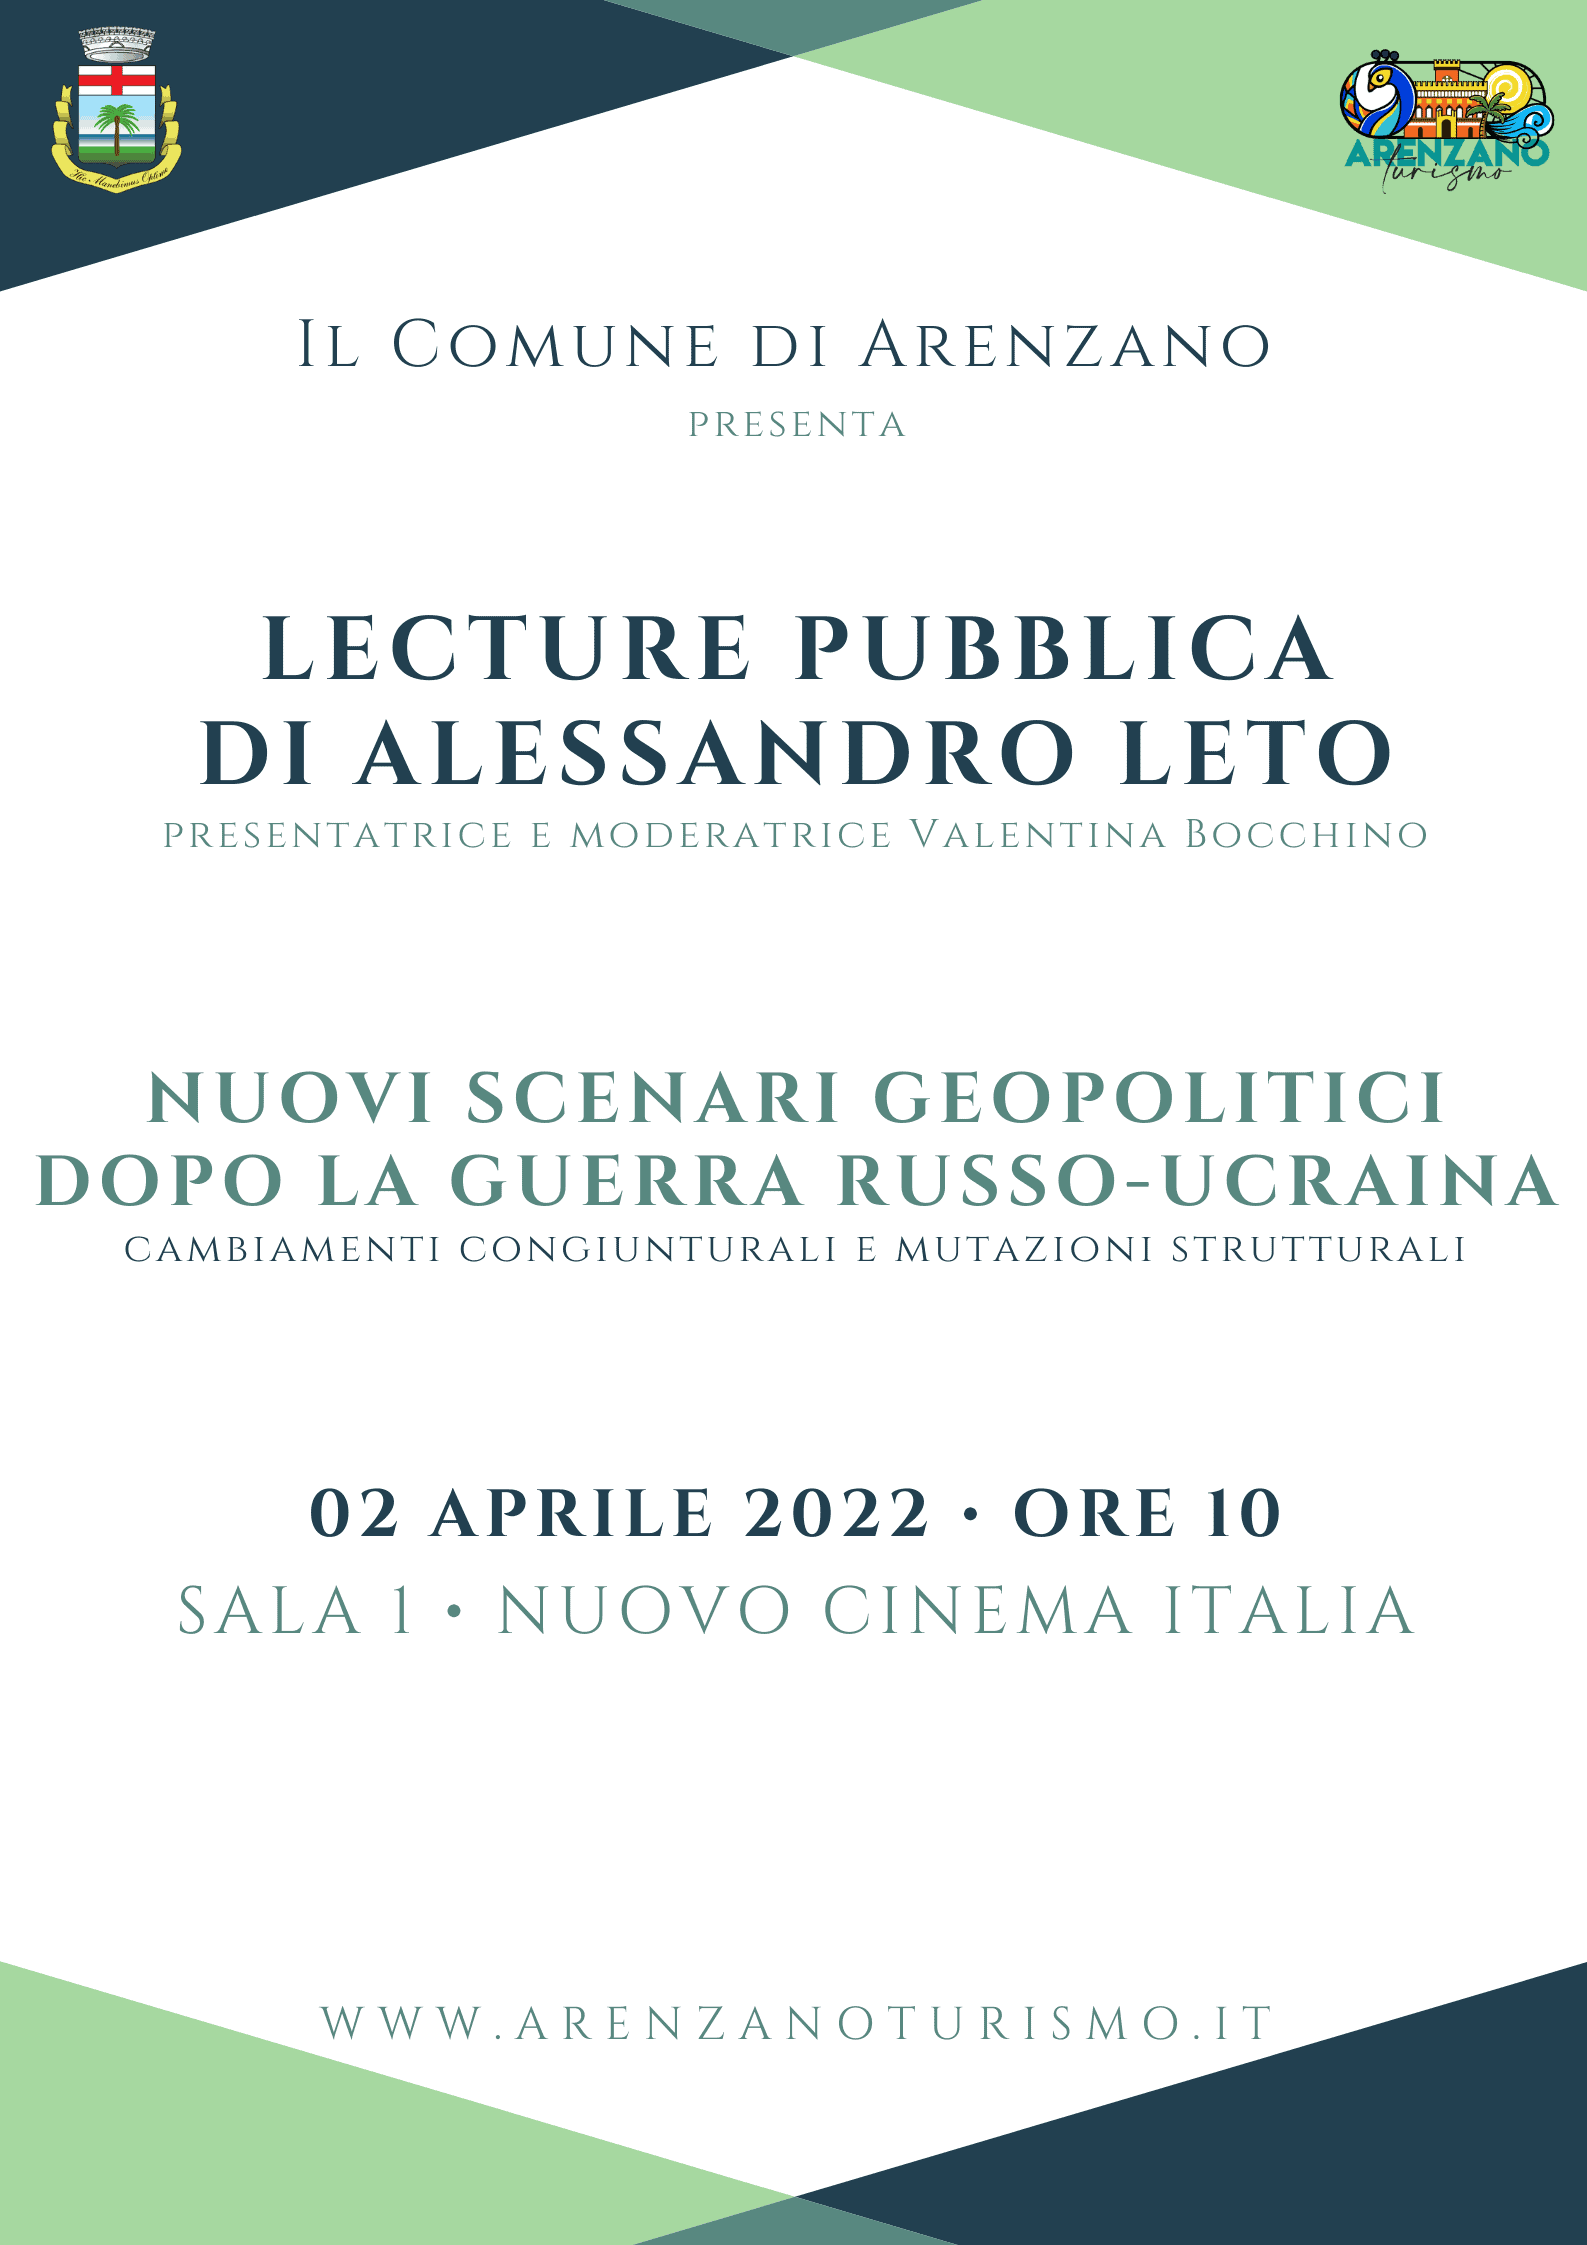 Lecture pubblica di Alessandro Leto